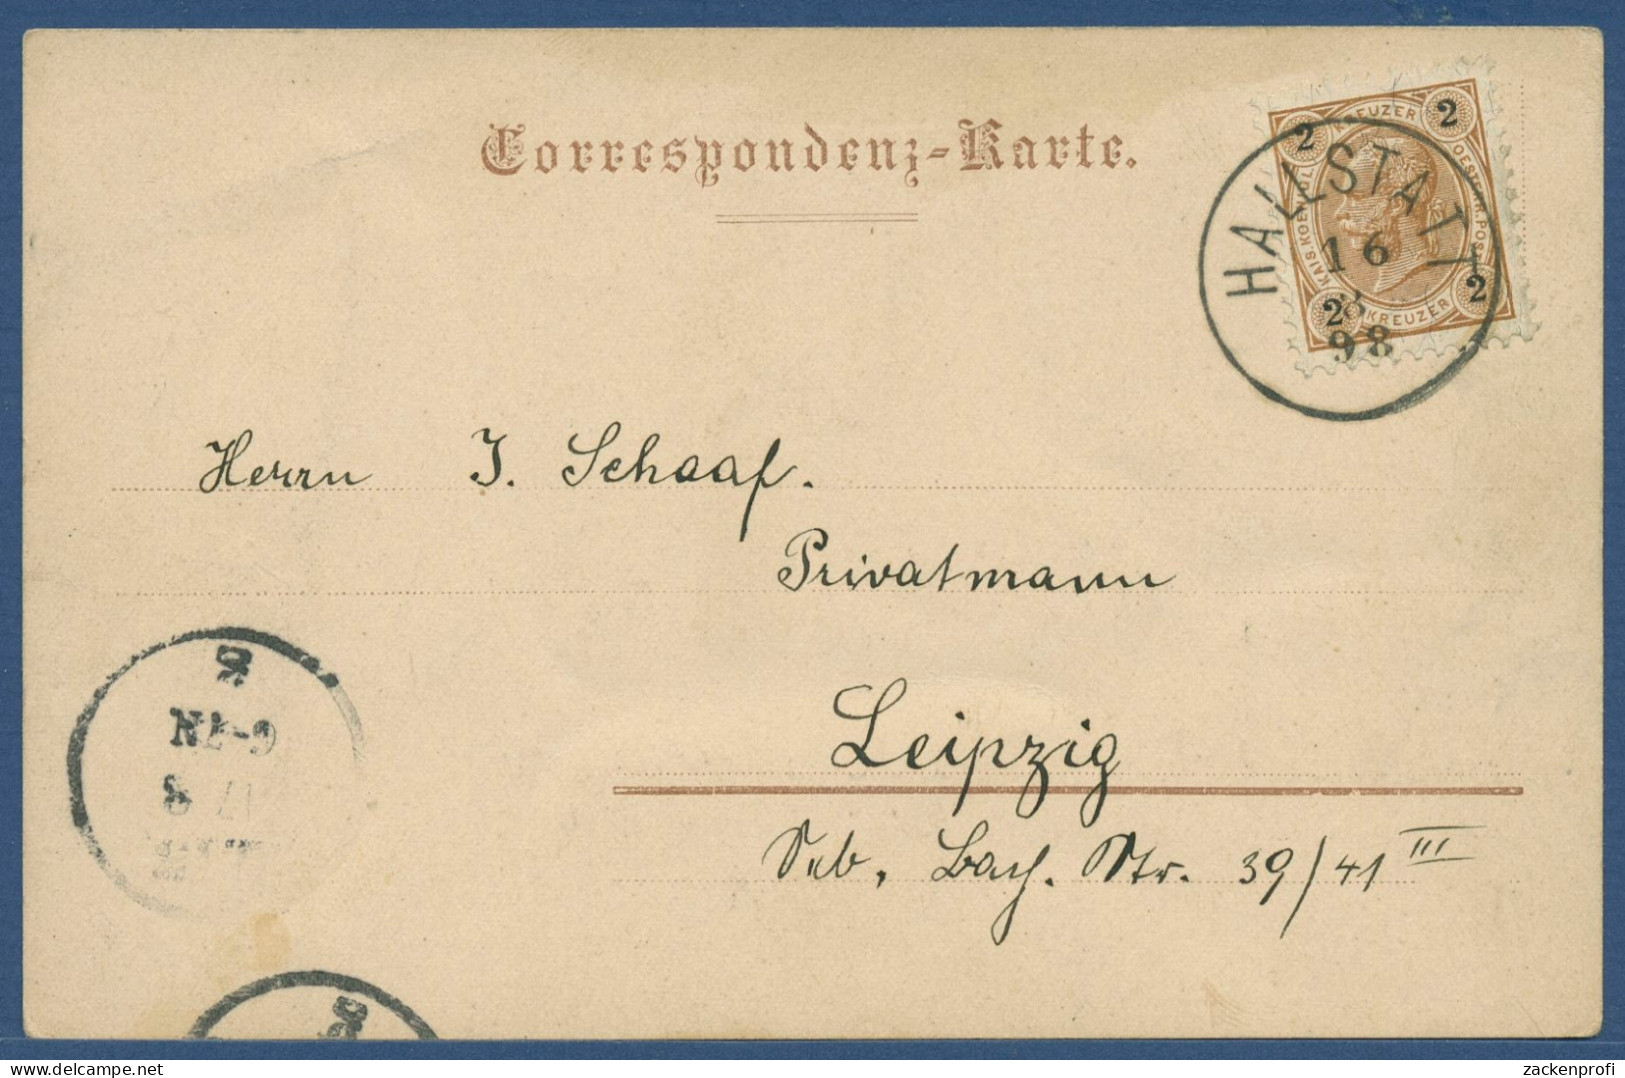 Gruß Aus Hallstadt Ortsansicht Berge, Gelaufen 1898 (AK3885) - Hallstatt